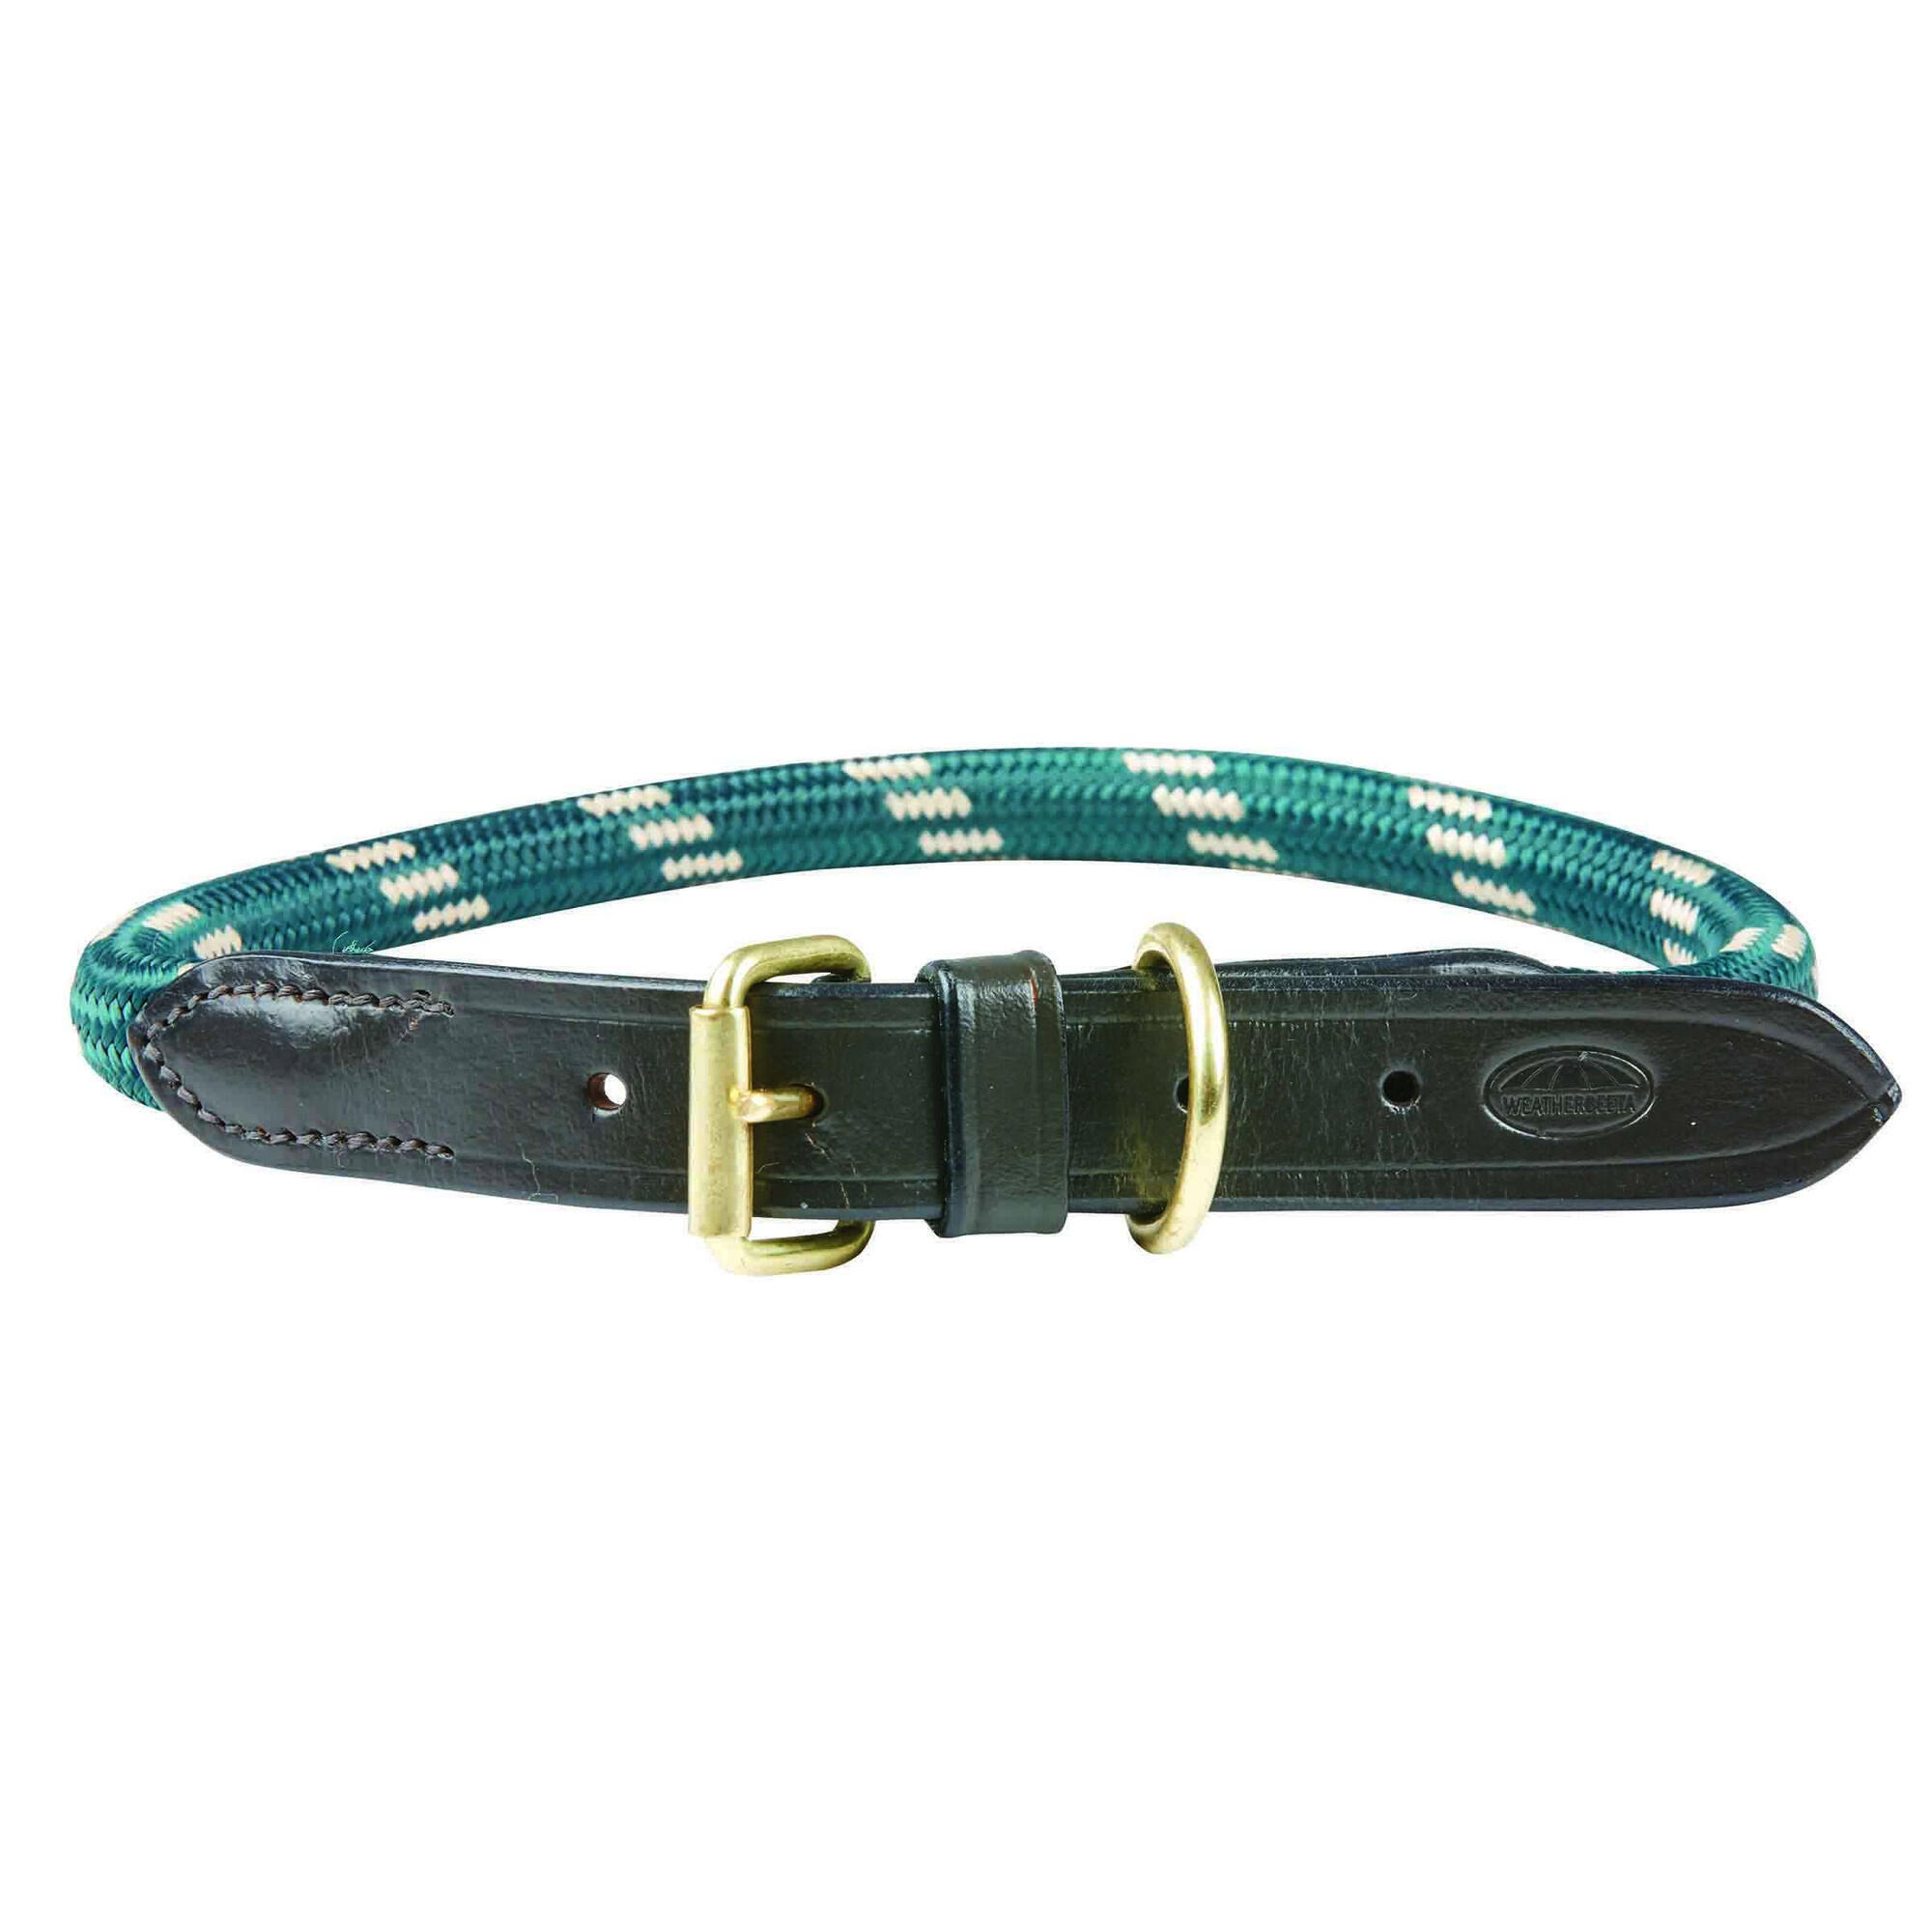 WEATHERBEETA Rope Leather Dog Collar (Hunter Green/Brown)